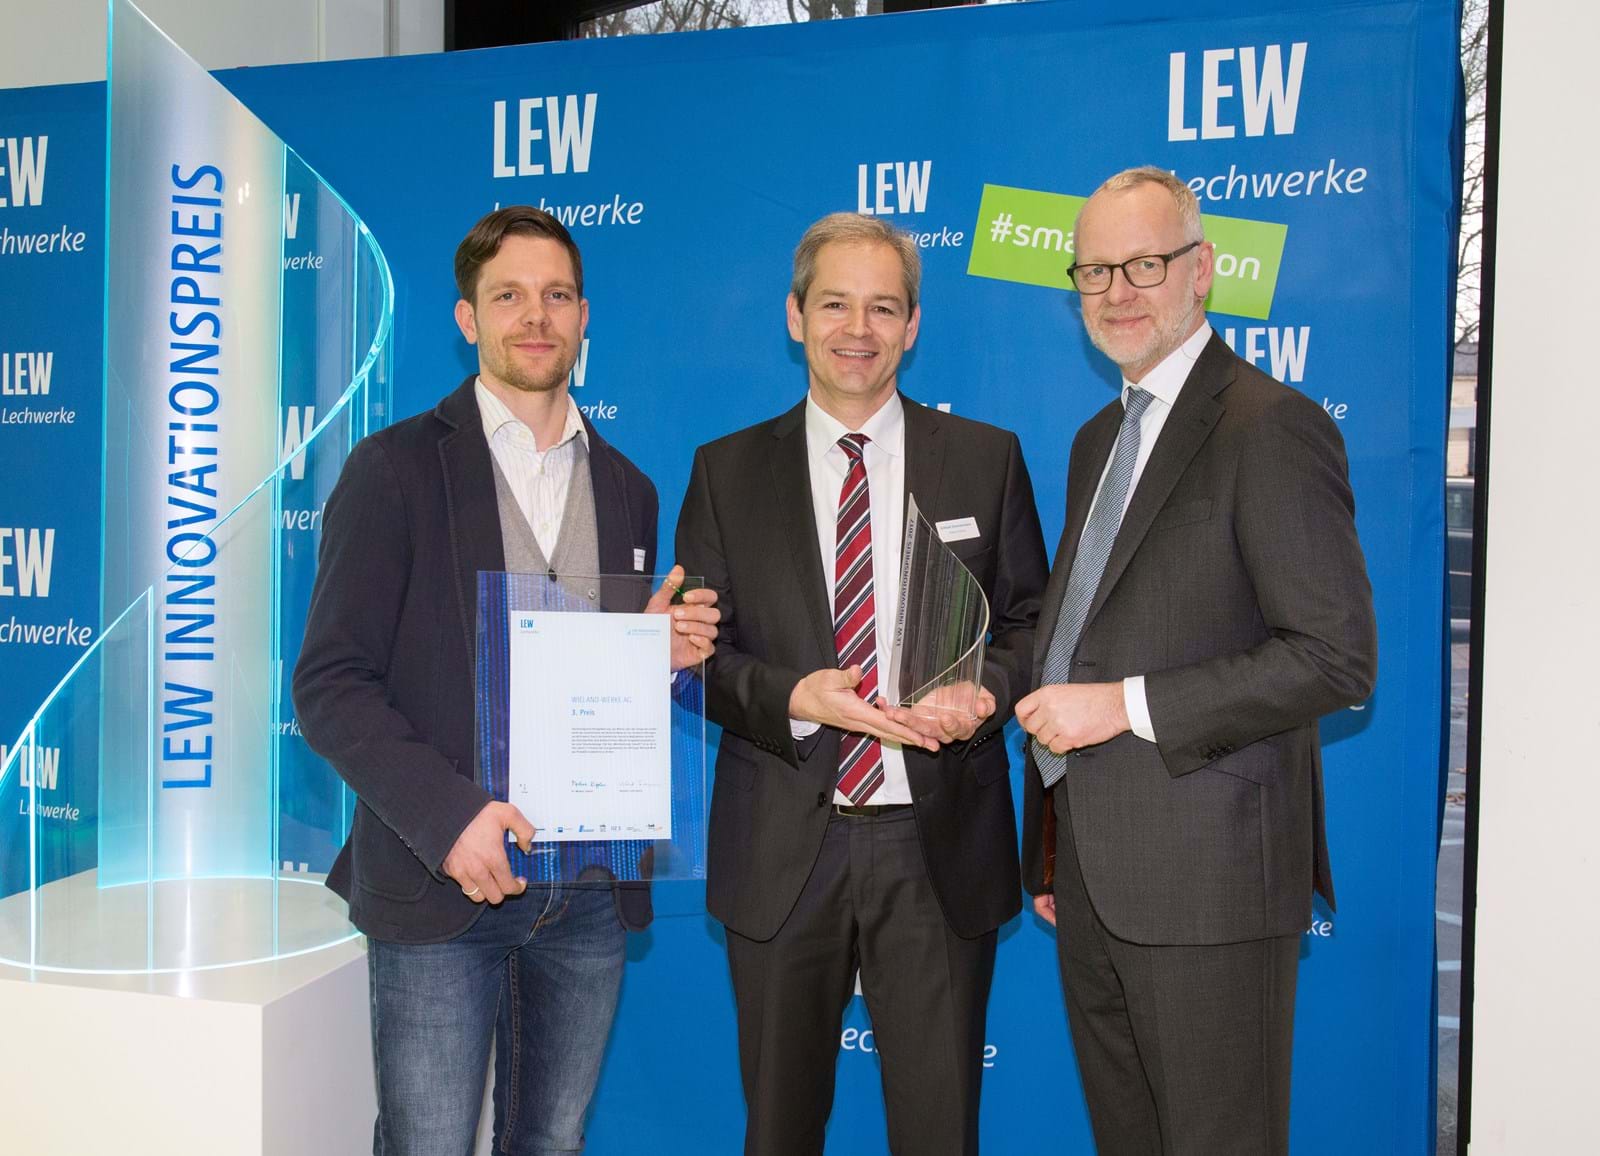 LEW-Vorstandsmitglied Dr. Markus Litpher (r.) überreicht Pokal und Urkunde für den 3. Platz beim LEW Innovationspreis an Benjamin Schwarz (l.) und Eckhart Zimmermann von der Wieland Werke AG.